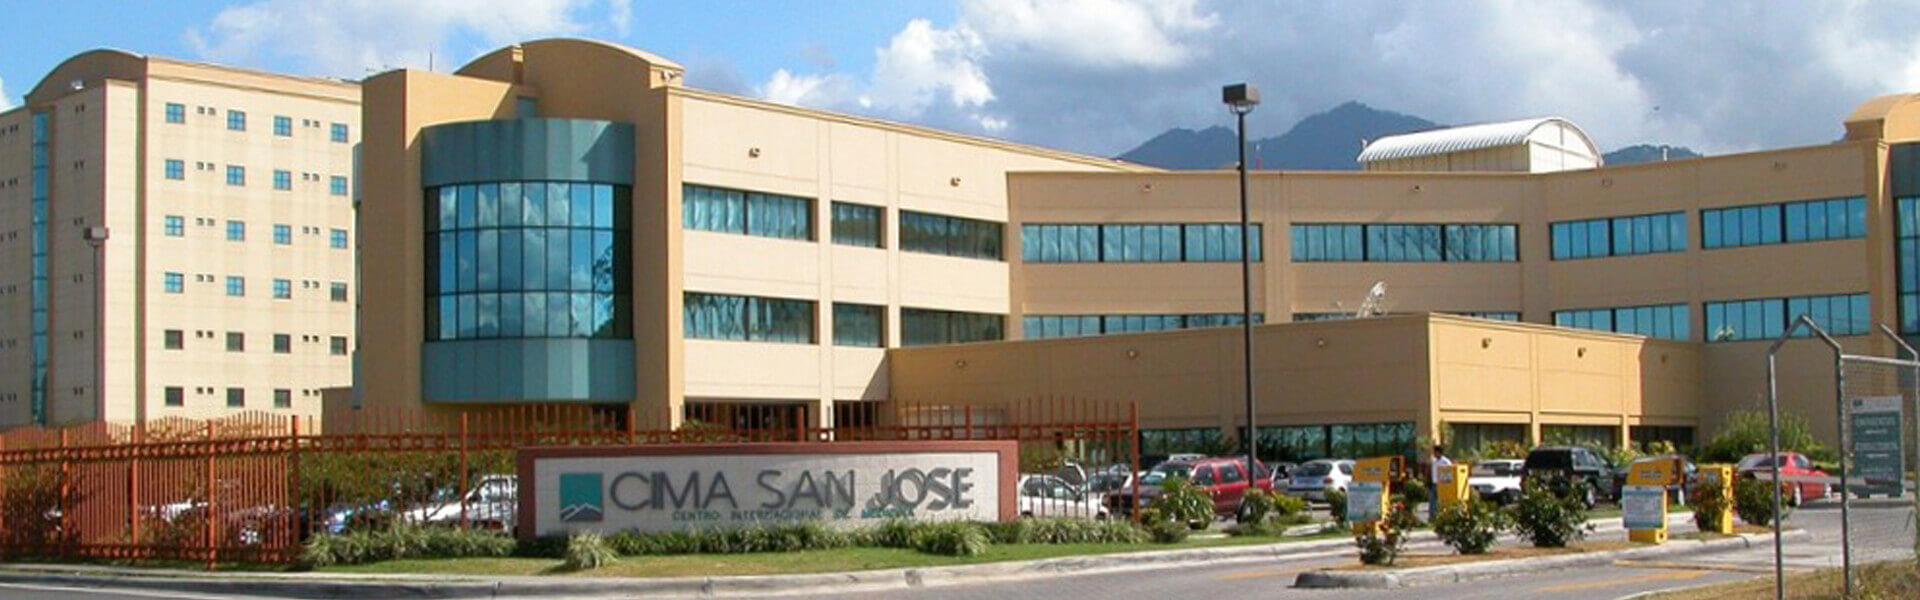 Picture of the Cima Hospital in Escazu, Costa Rica